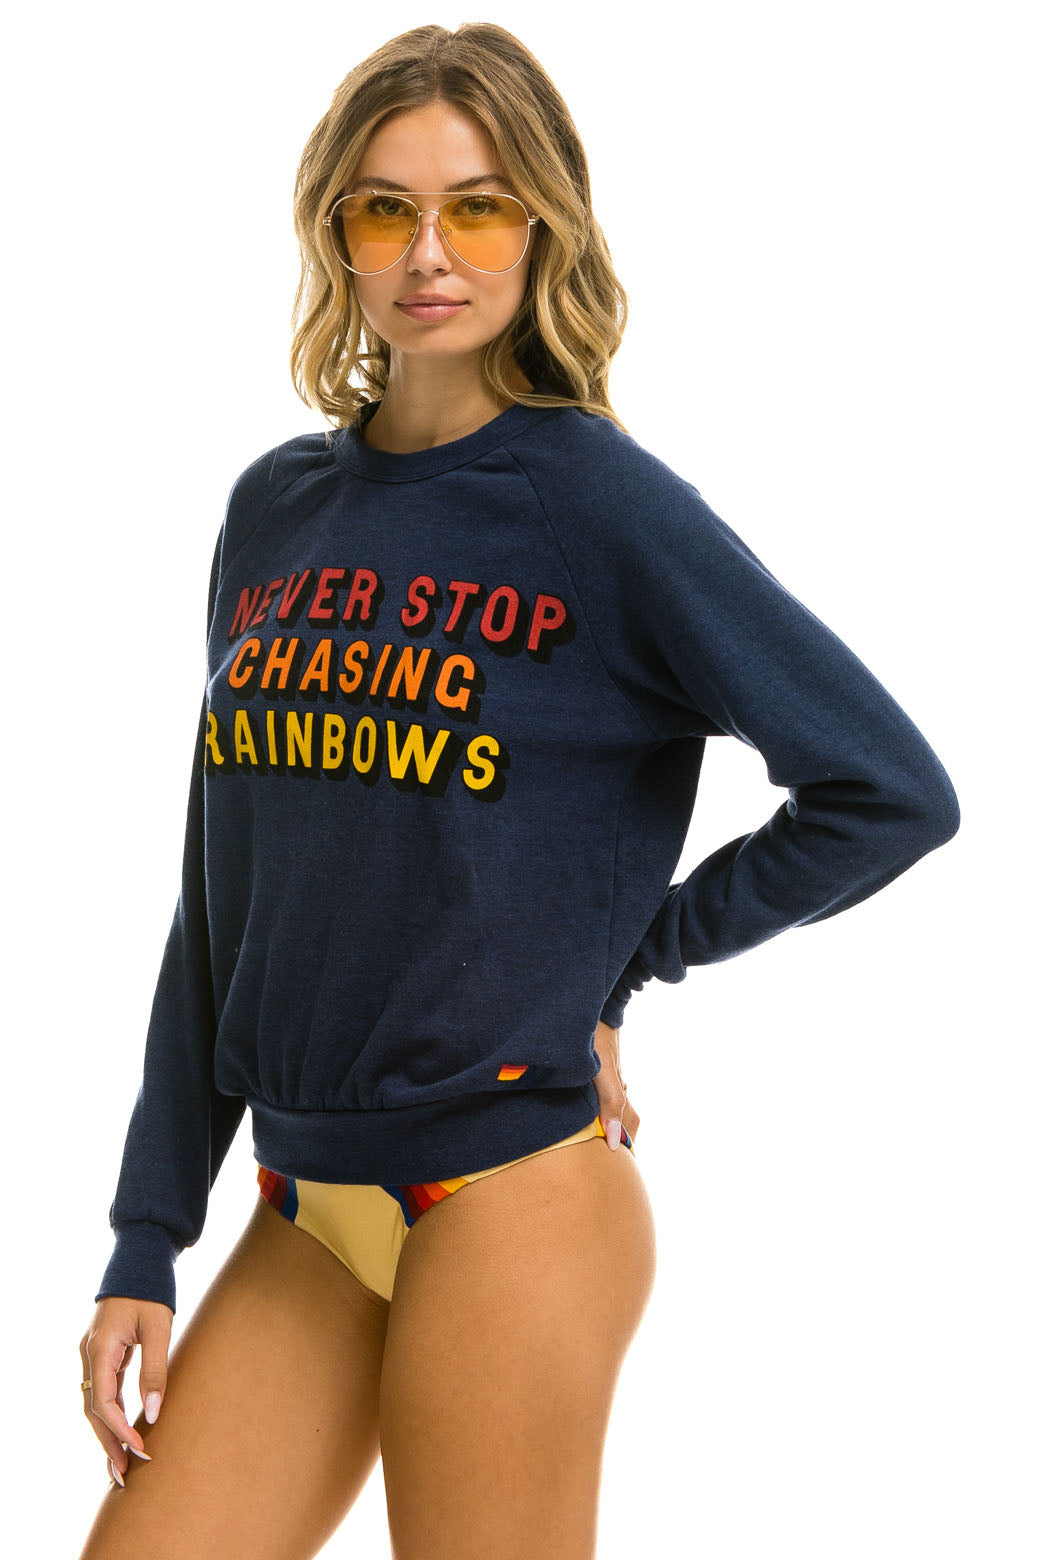 NEVER STOP CHASING RAINBOWS CREW SWEATSHIRT - NAVY Sweatshirt Aviator Nation 